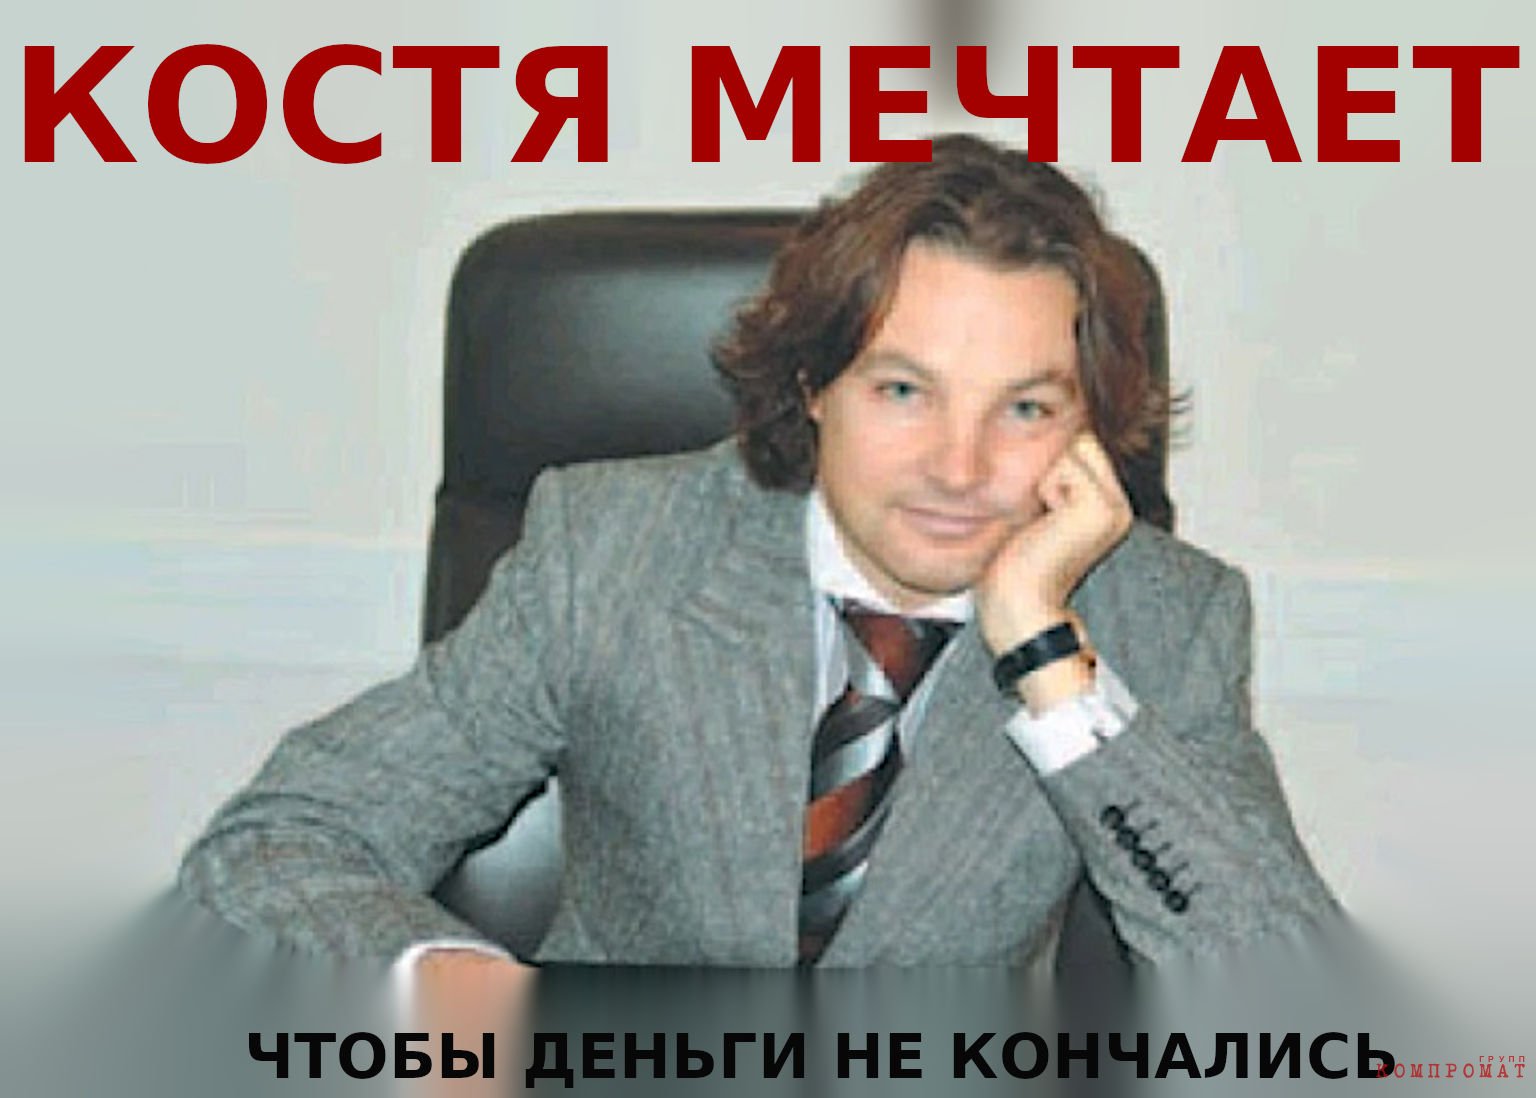 Шварц Константин Валерьевич понимает что «известный мошенник» — товар никому не нужный